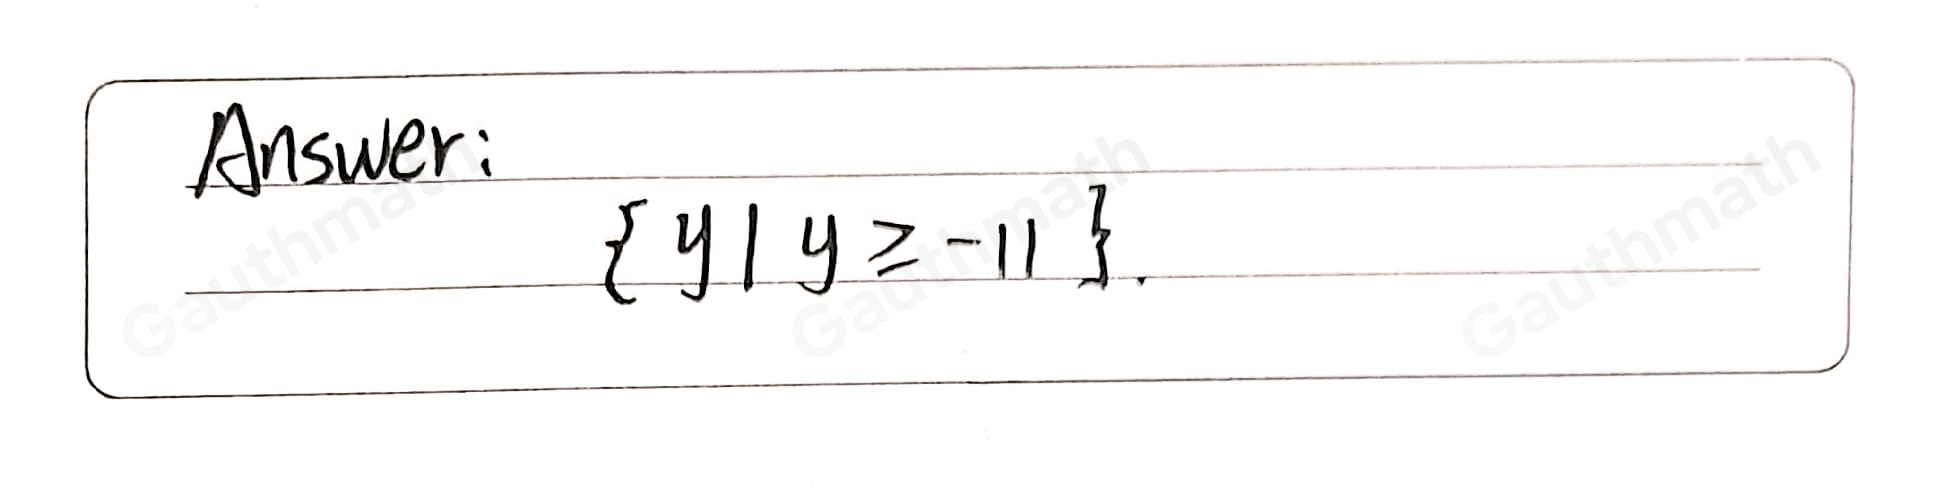 What is the range of the function fx=3x2+6x-8 ? y|y ≥ -1 y|y ≤ -1 y|y ≥ -11 y|y ≤ -11 -